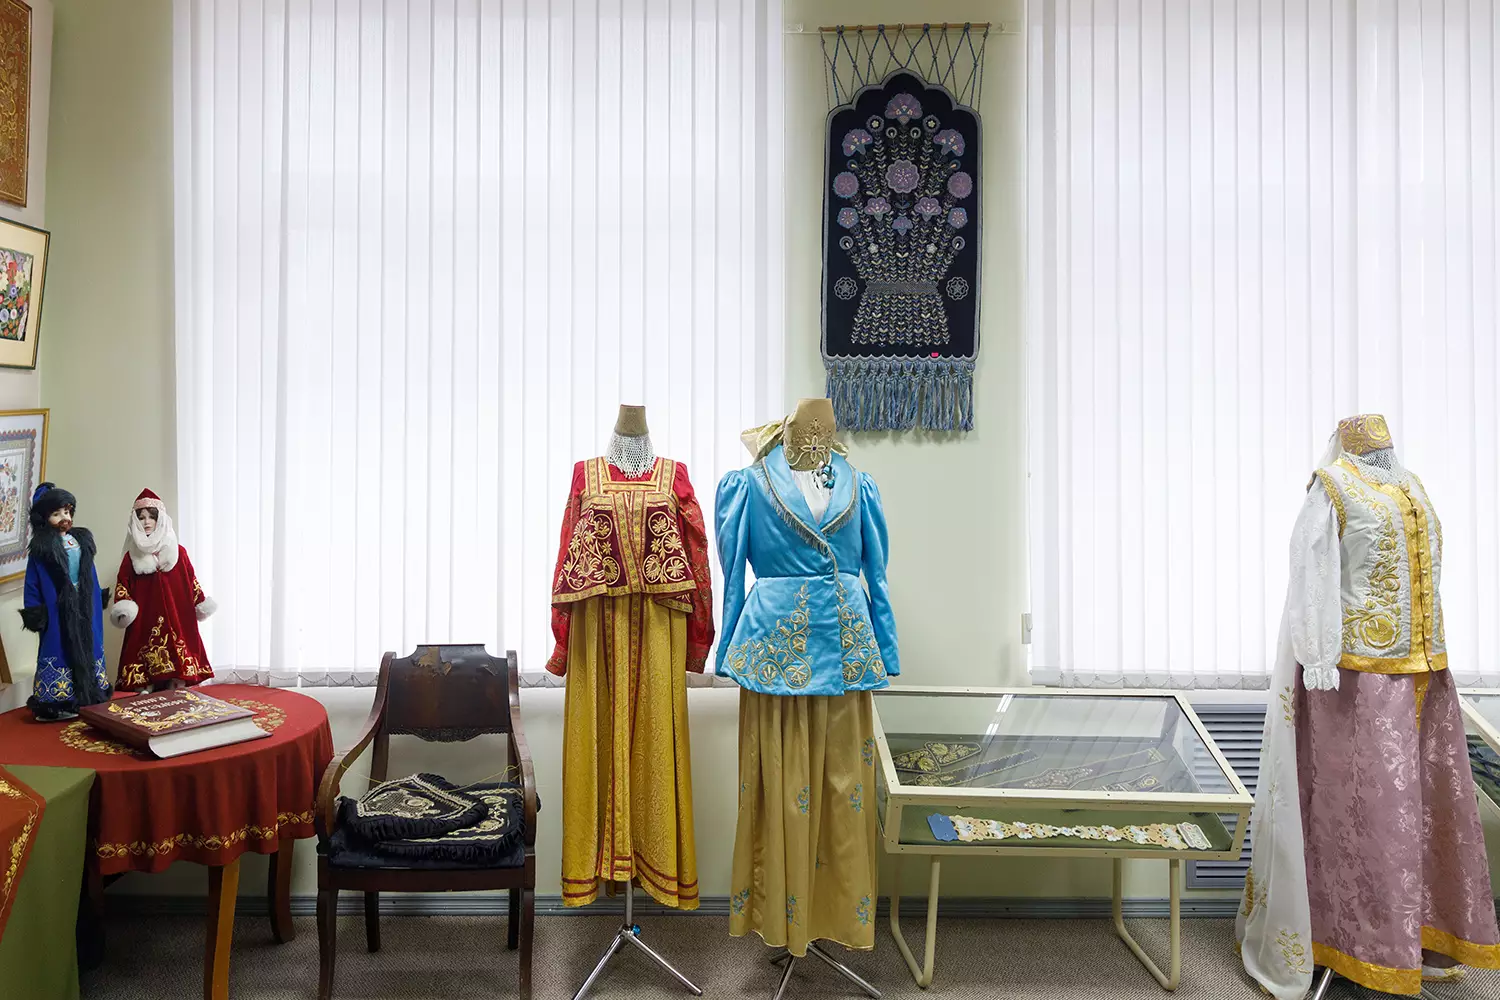 Музей золотного шитья и прикладного искусства отделения золотного шитья Торжокского педагогического колледжа